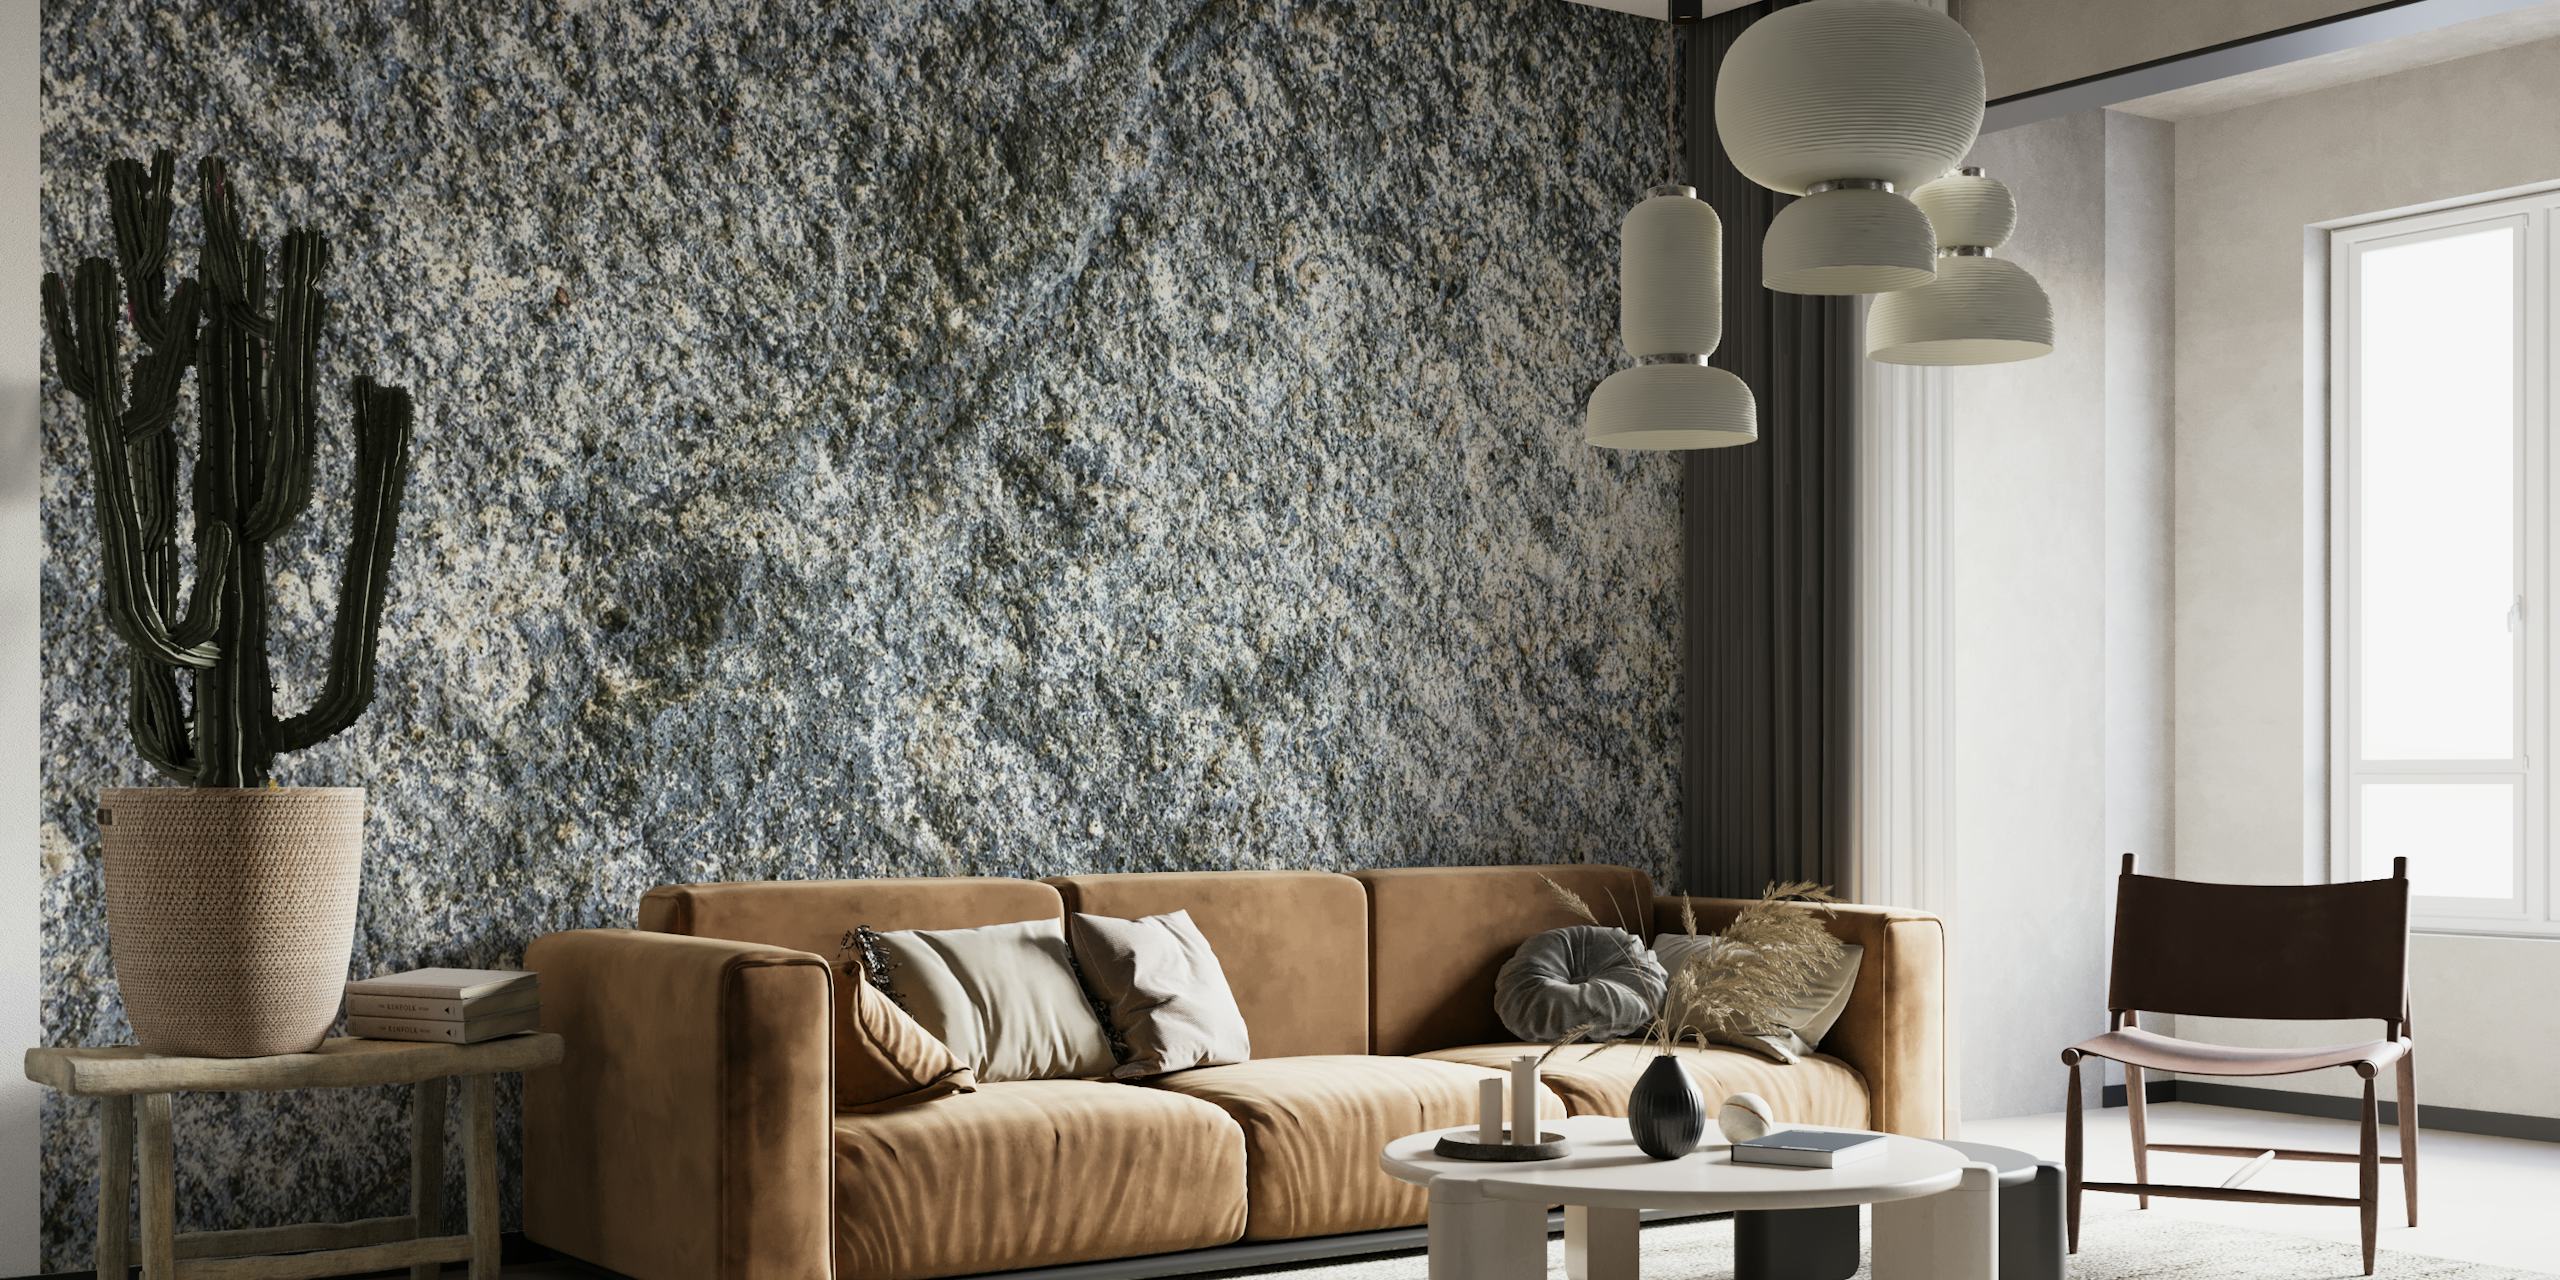 Granit rock tekstur vægmaleri med detaljerede grå og hvide mønstre